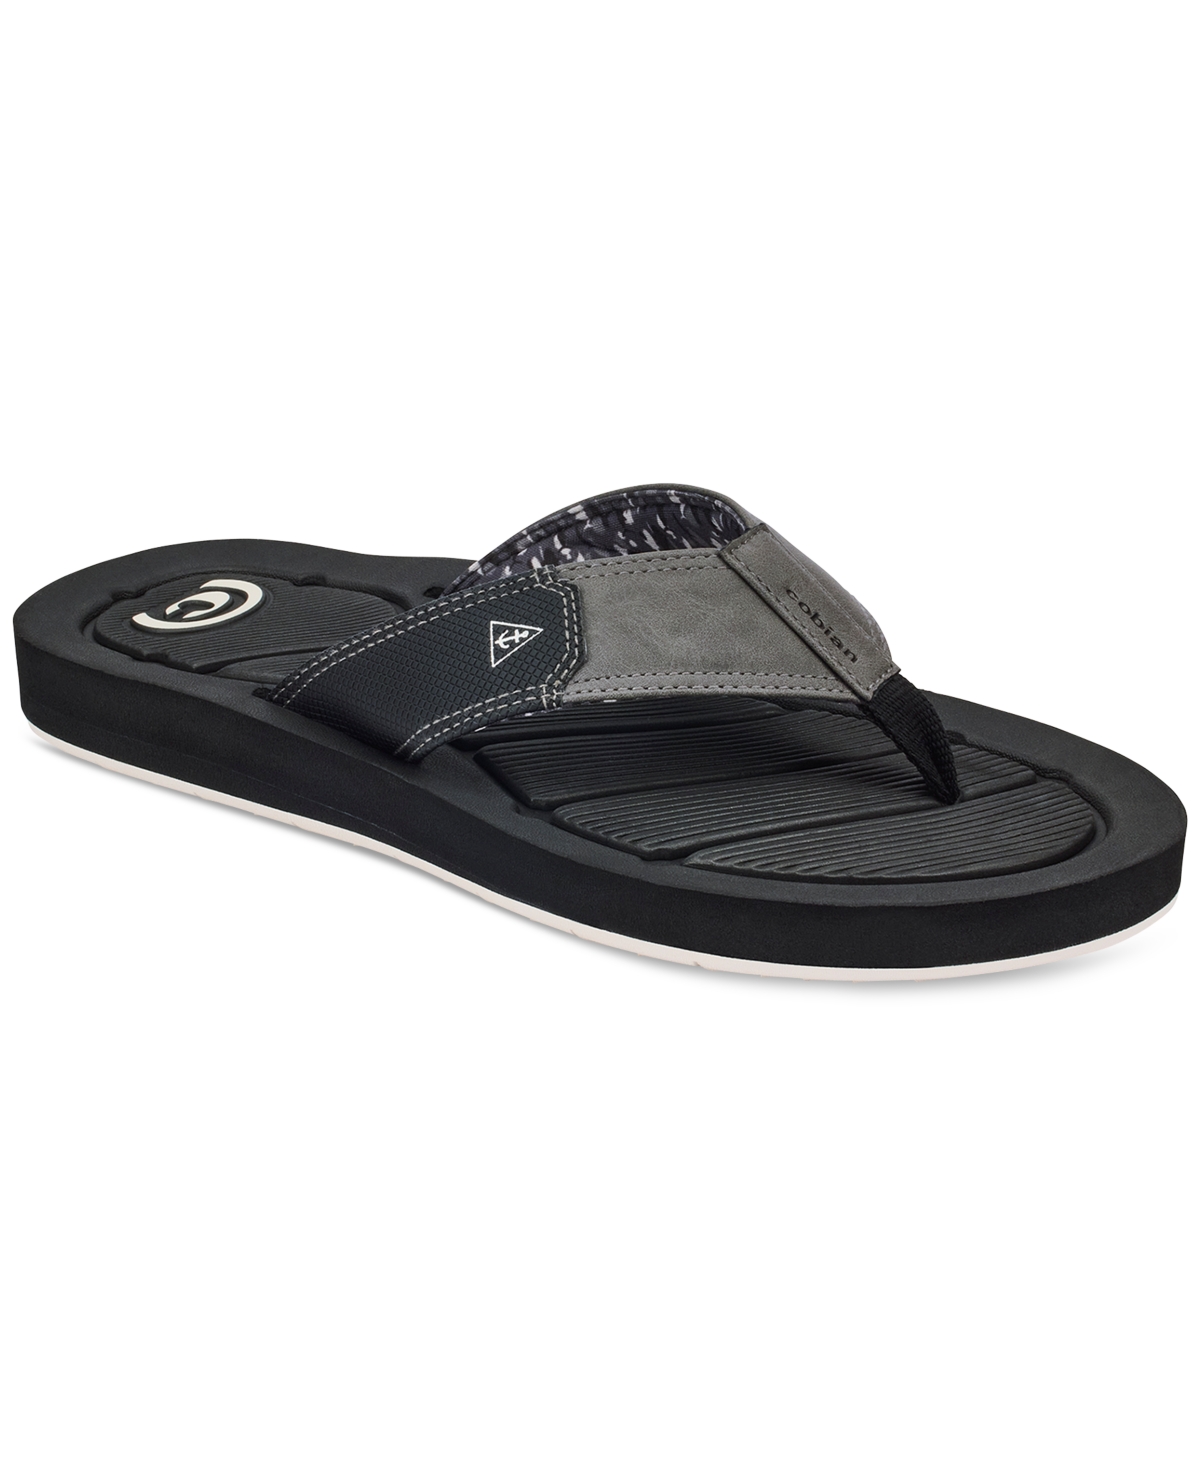 Men's Draino 3 Flip-Flop Sandals - Black